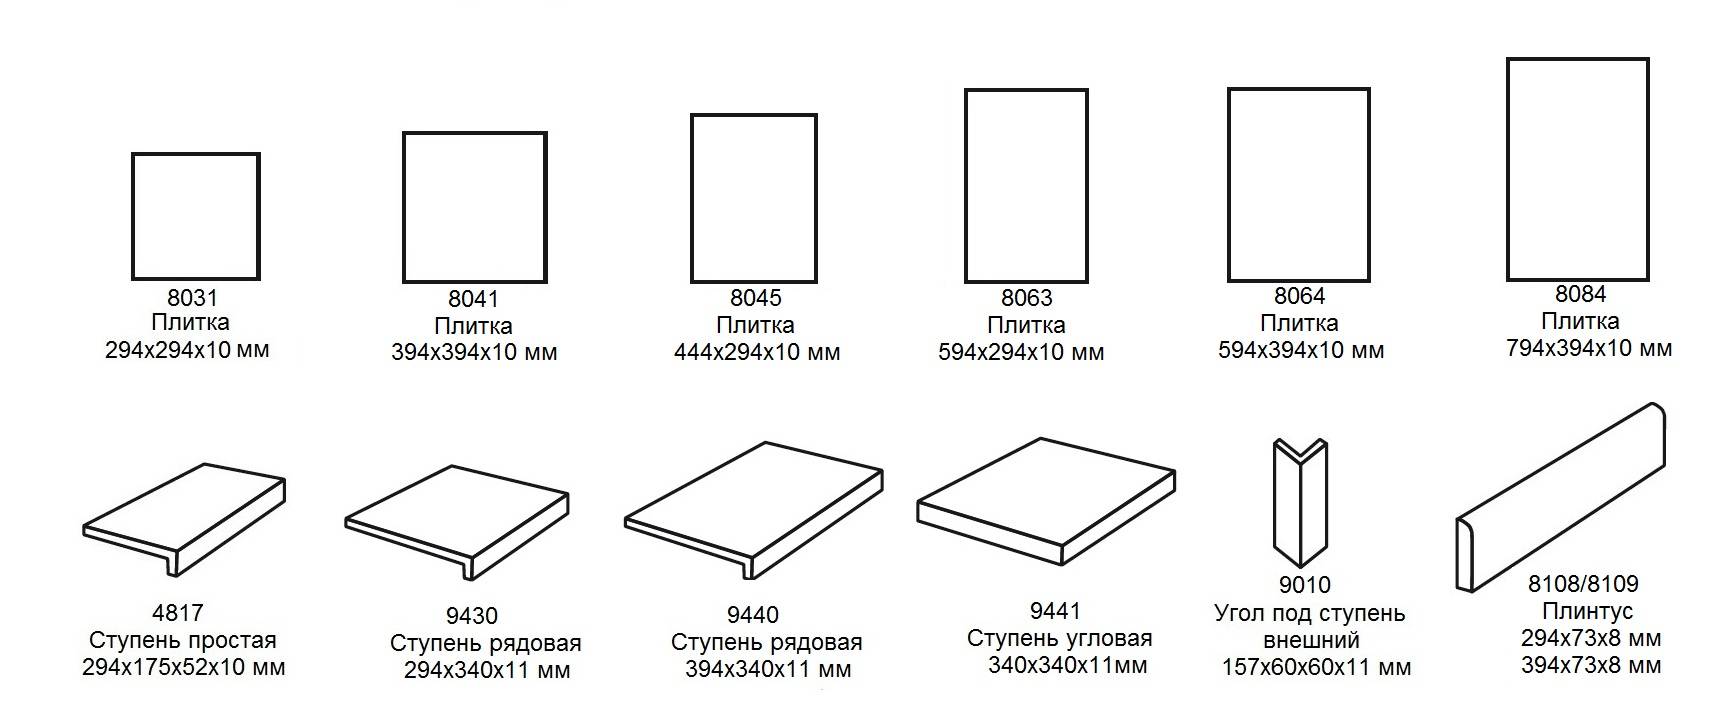 Размеры напольной плитки: большая и маленькая керамическая плитка на пол, ширина длинной, стандартные размеры на фото и видео